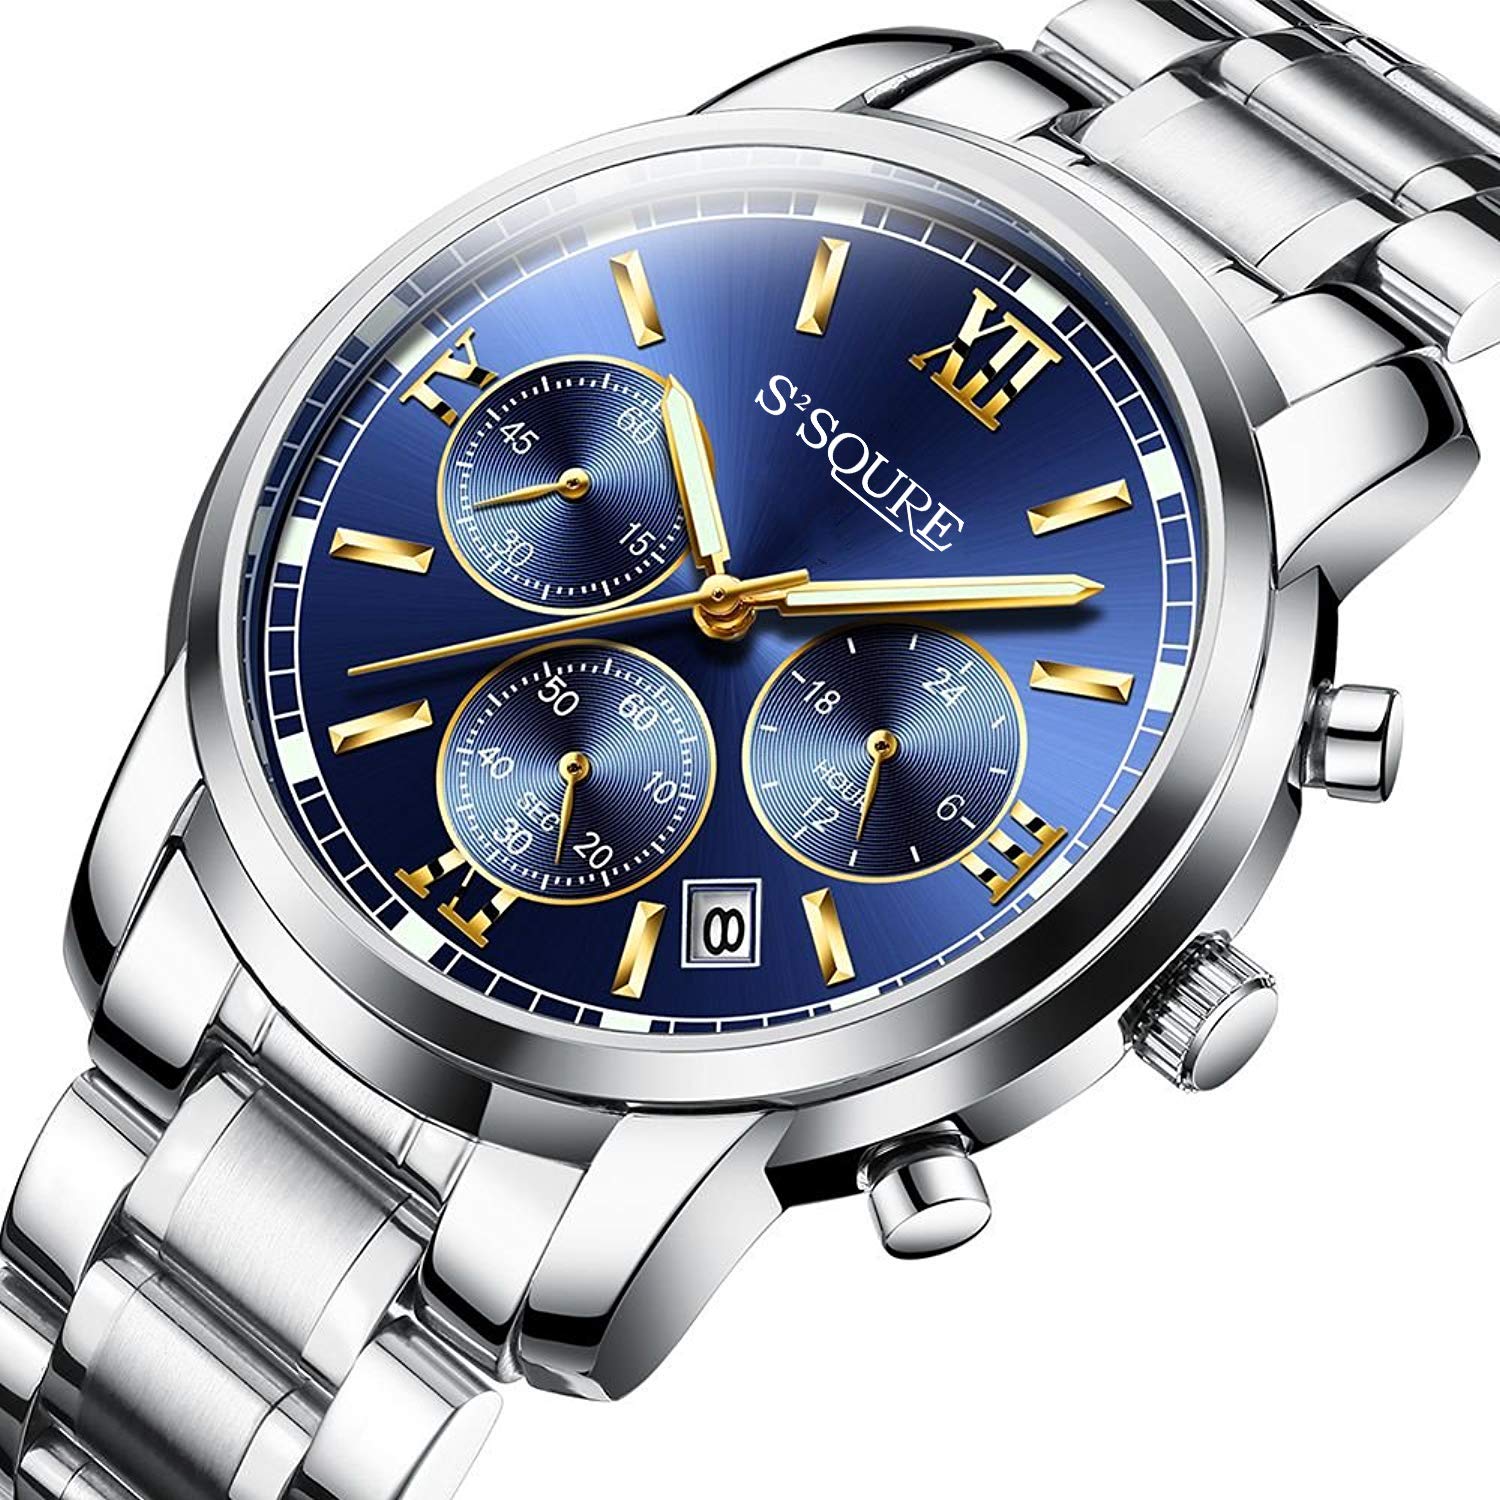 安いメンズ腕時計のおすすめ32選 コスパ最強ランキング 21最新版 Rank1 ランク1 人気ランキングまとめサイト 国内最大級